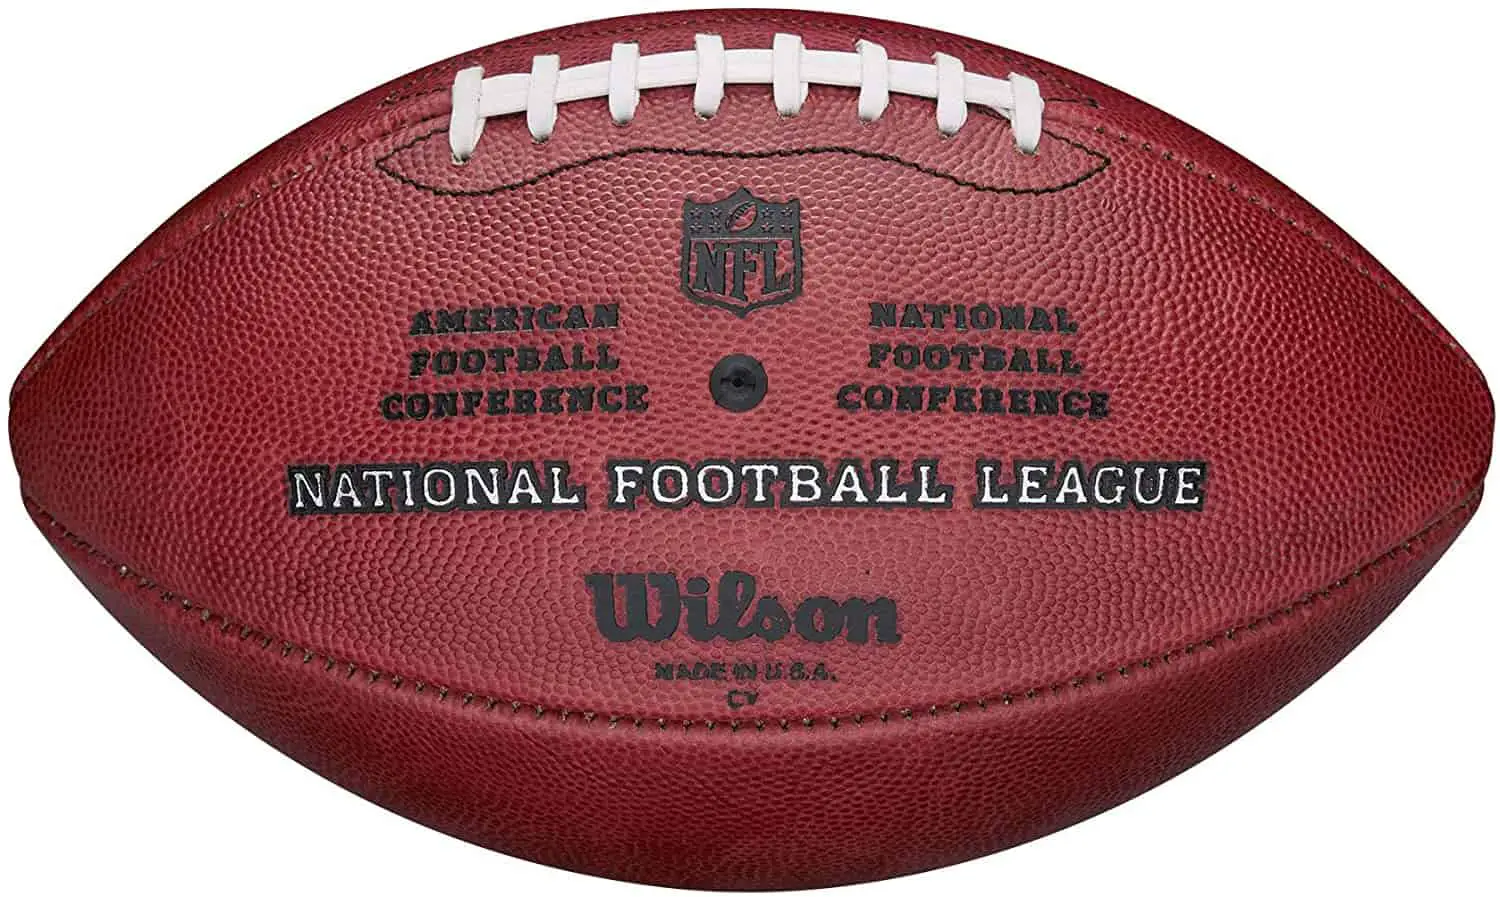 Baolina baolina kitra amerikana tsara indrindra "Pigskin": Wilson "The Duke" NFL Football ofisialy